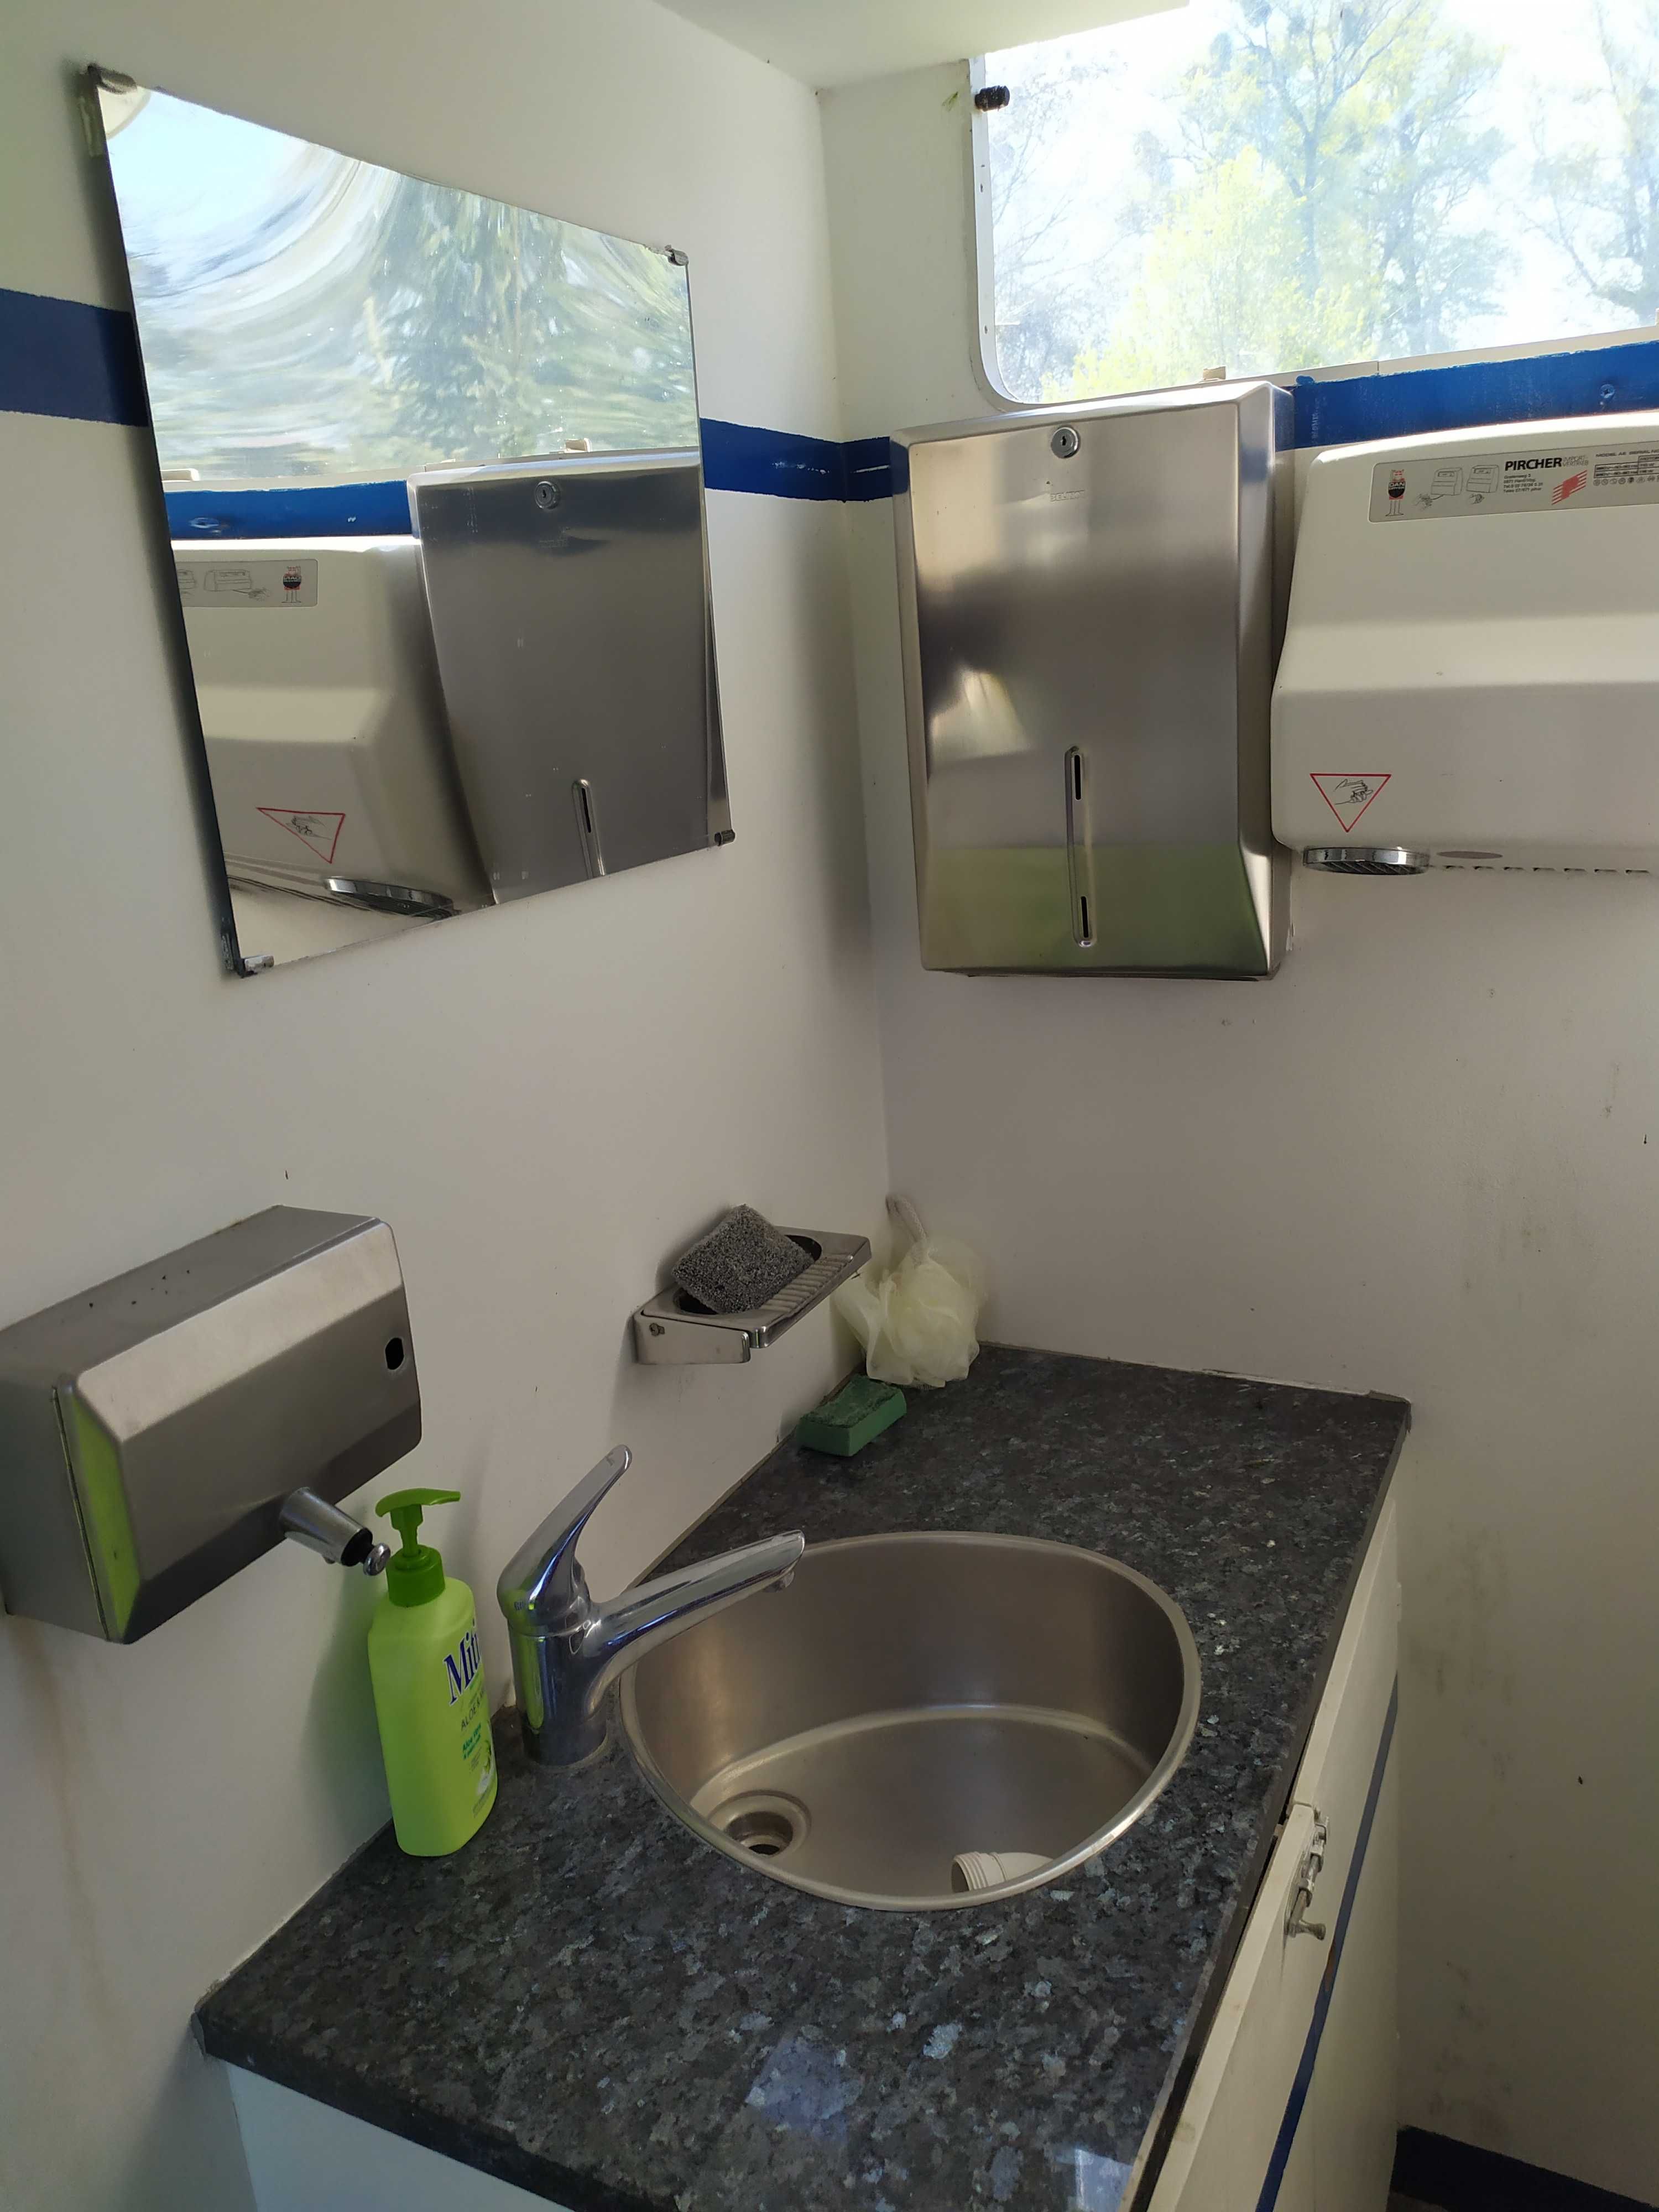 Przyczepa sanitarna 3 x kabina WC + pisuar + umywalki, WC przenośne.